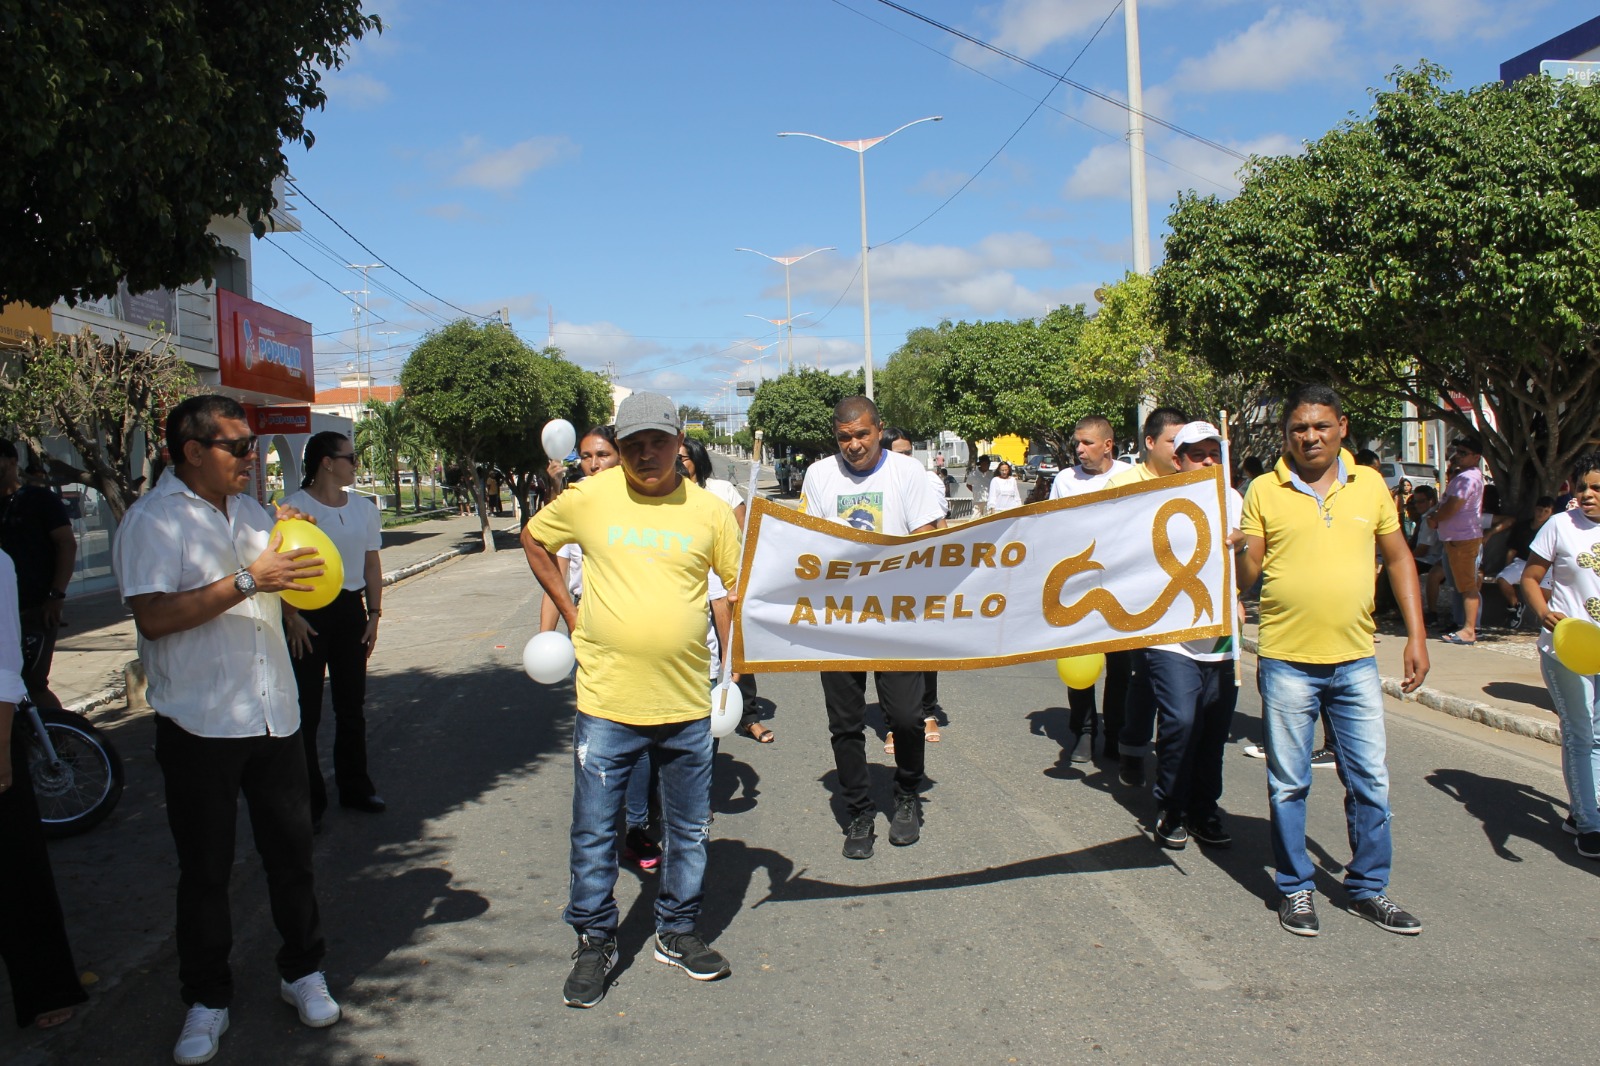 Desfiles-Civicos-em-Monteiro-acontecem-com-grande-presenca-de-publico-e-autoridades-36 Desfiles Cívicos em Monteiro acontecem com grande presença de público e autoridades